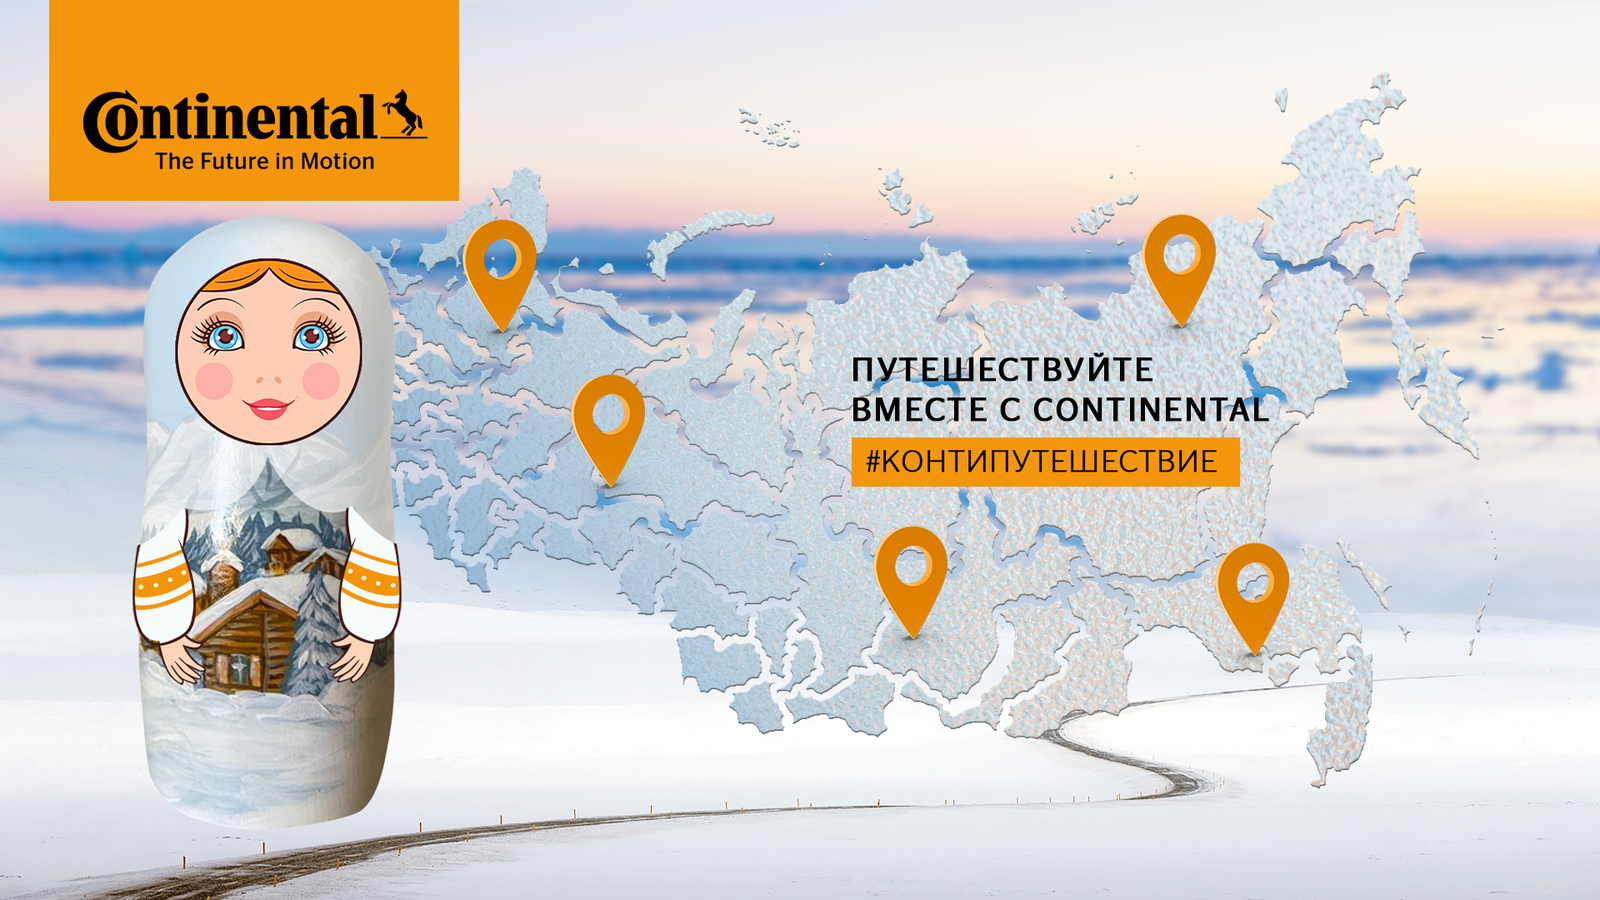 Онлайн-альбом с автомаршрутами по России появится в рамках проекта «Путешествуйте вместе с Continental»